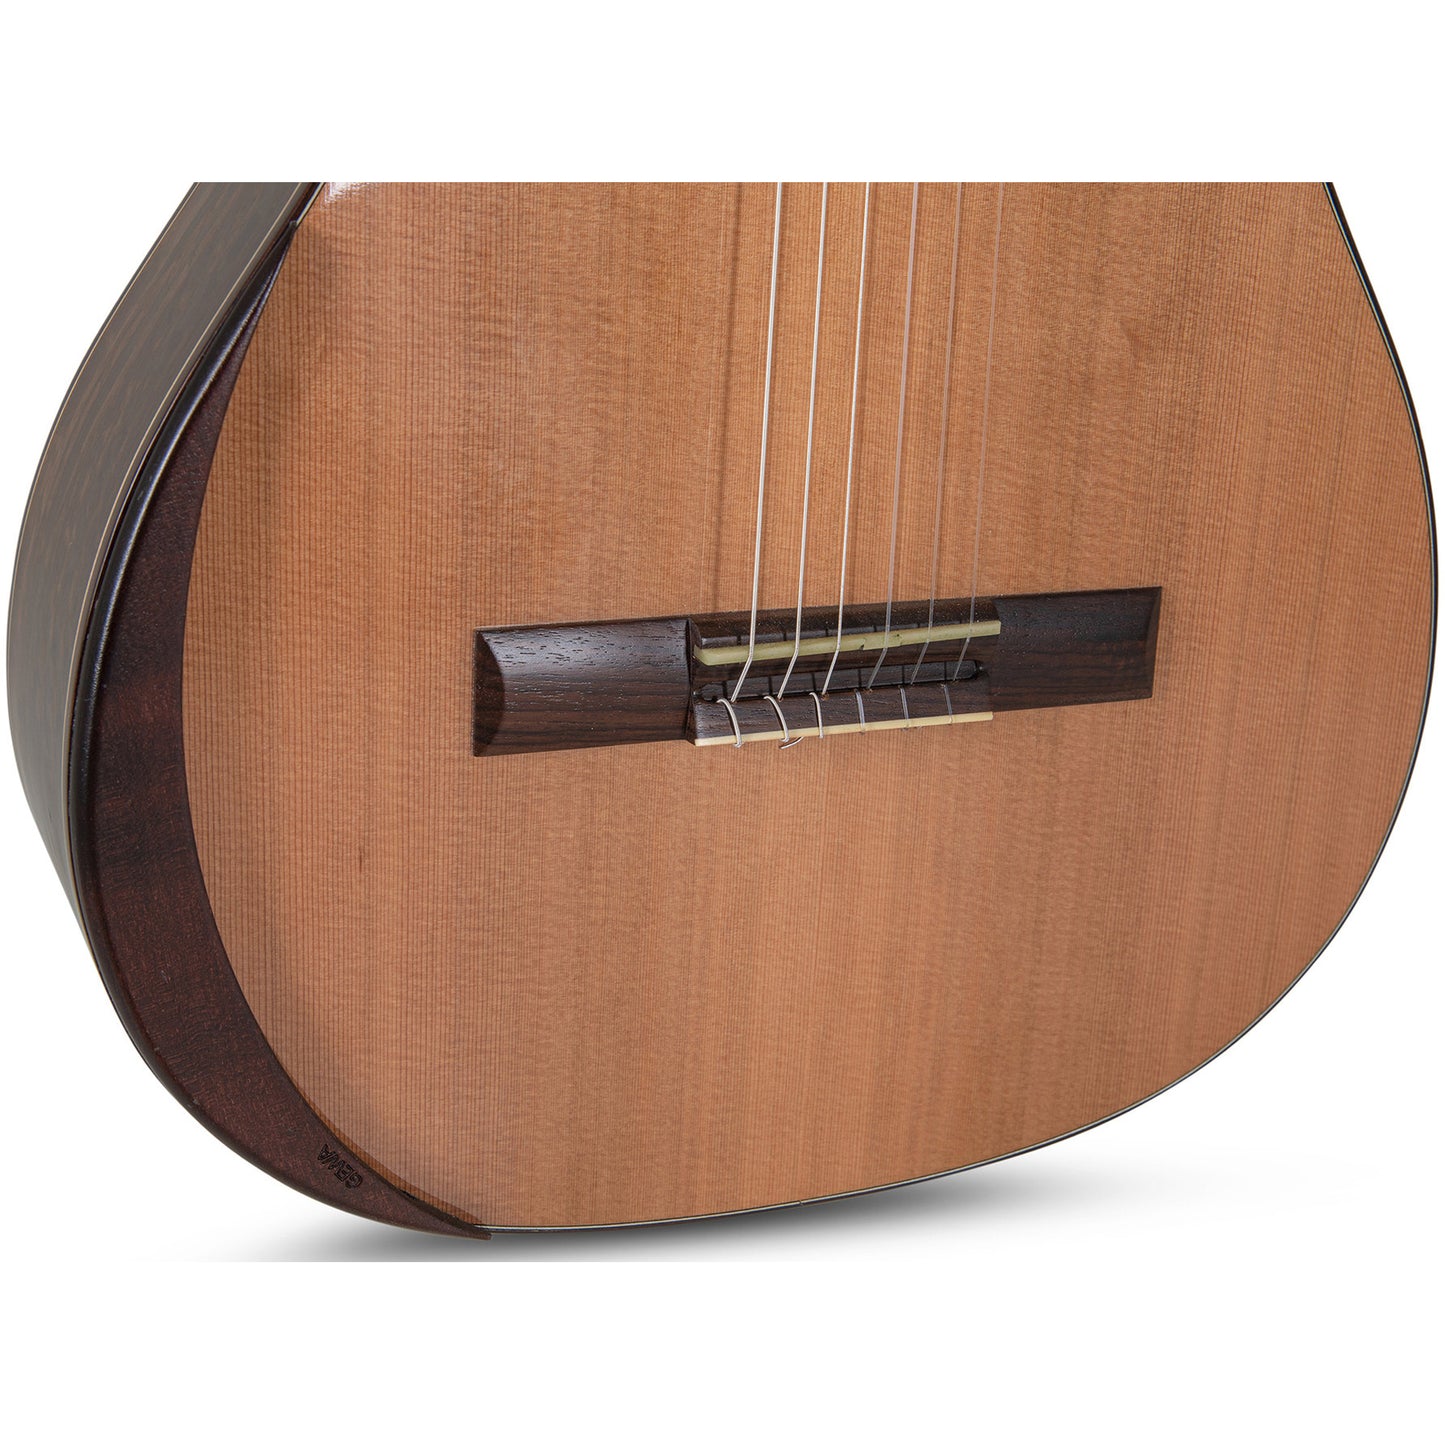 Manuel Rodriguez Superior B-C Eukalyptus Acoustic Guitar - Solid Cedar Top